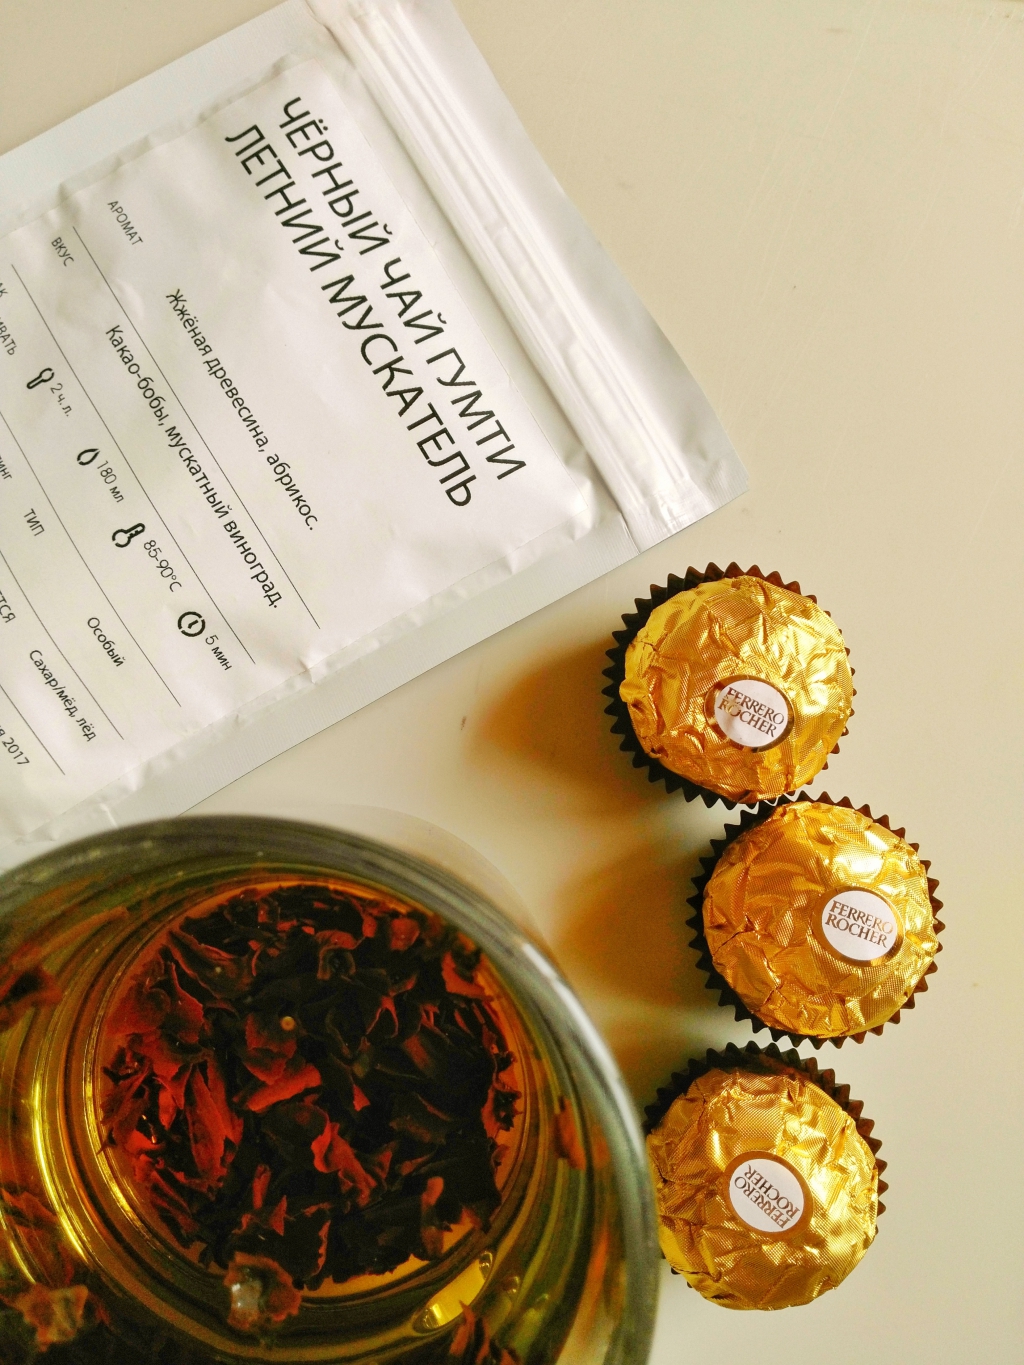 Teabox Индийский чай "Английский завтрак" - Индийский свежий чай Teabox «Черный чай Гумти особый летний мускатель»